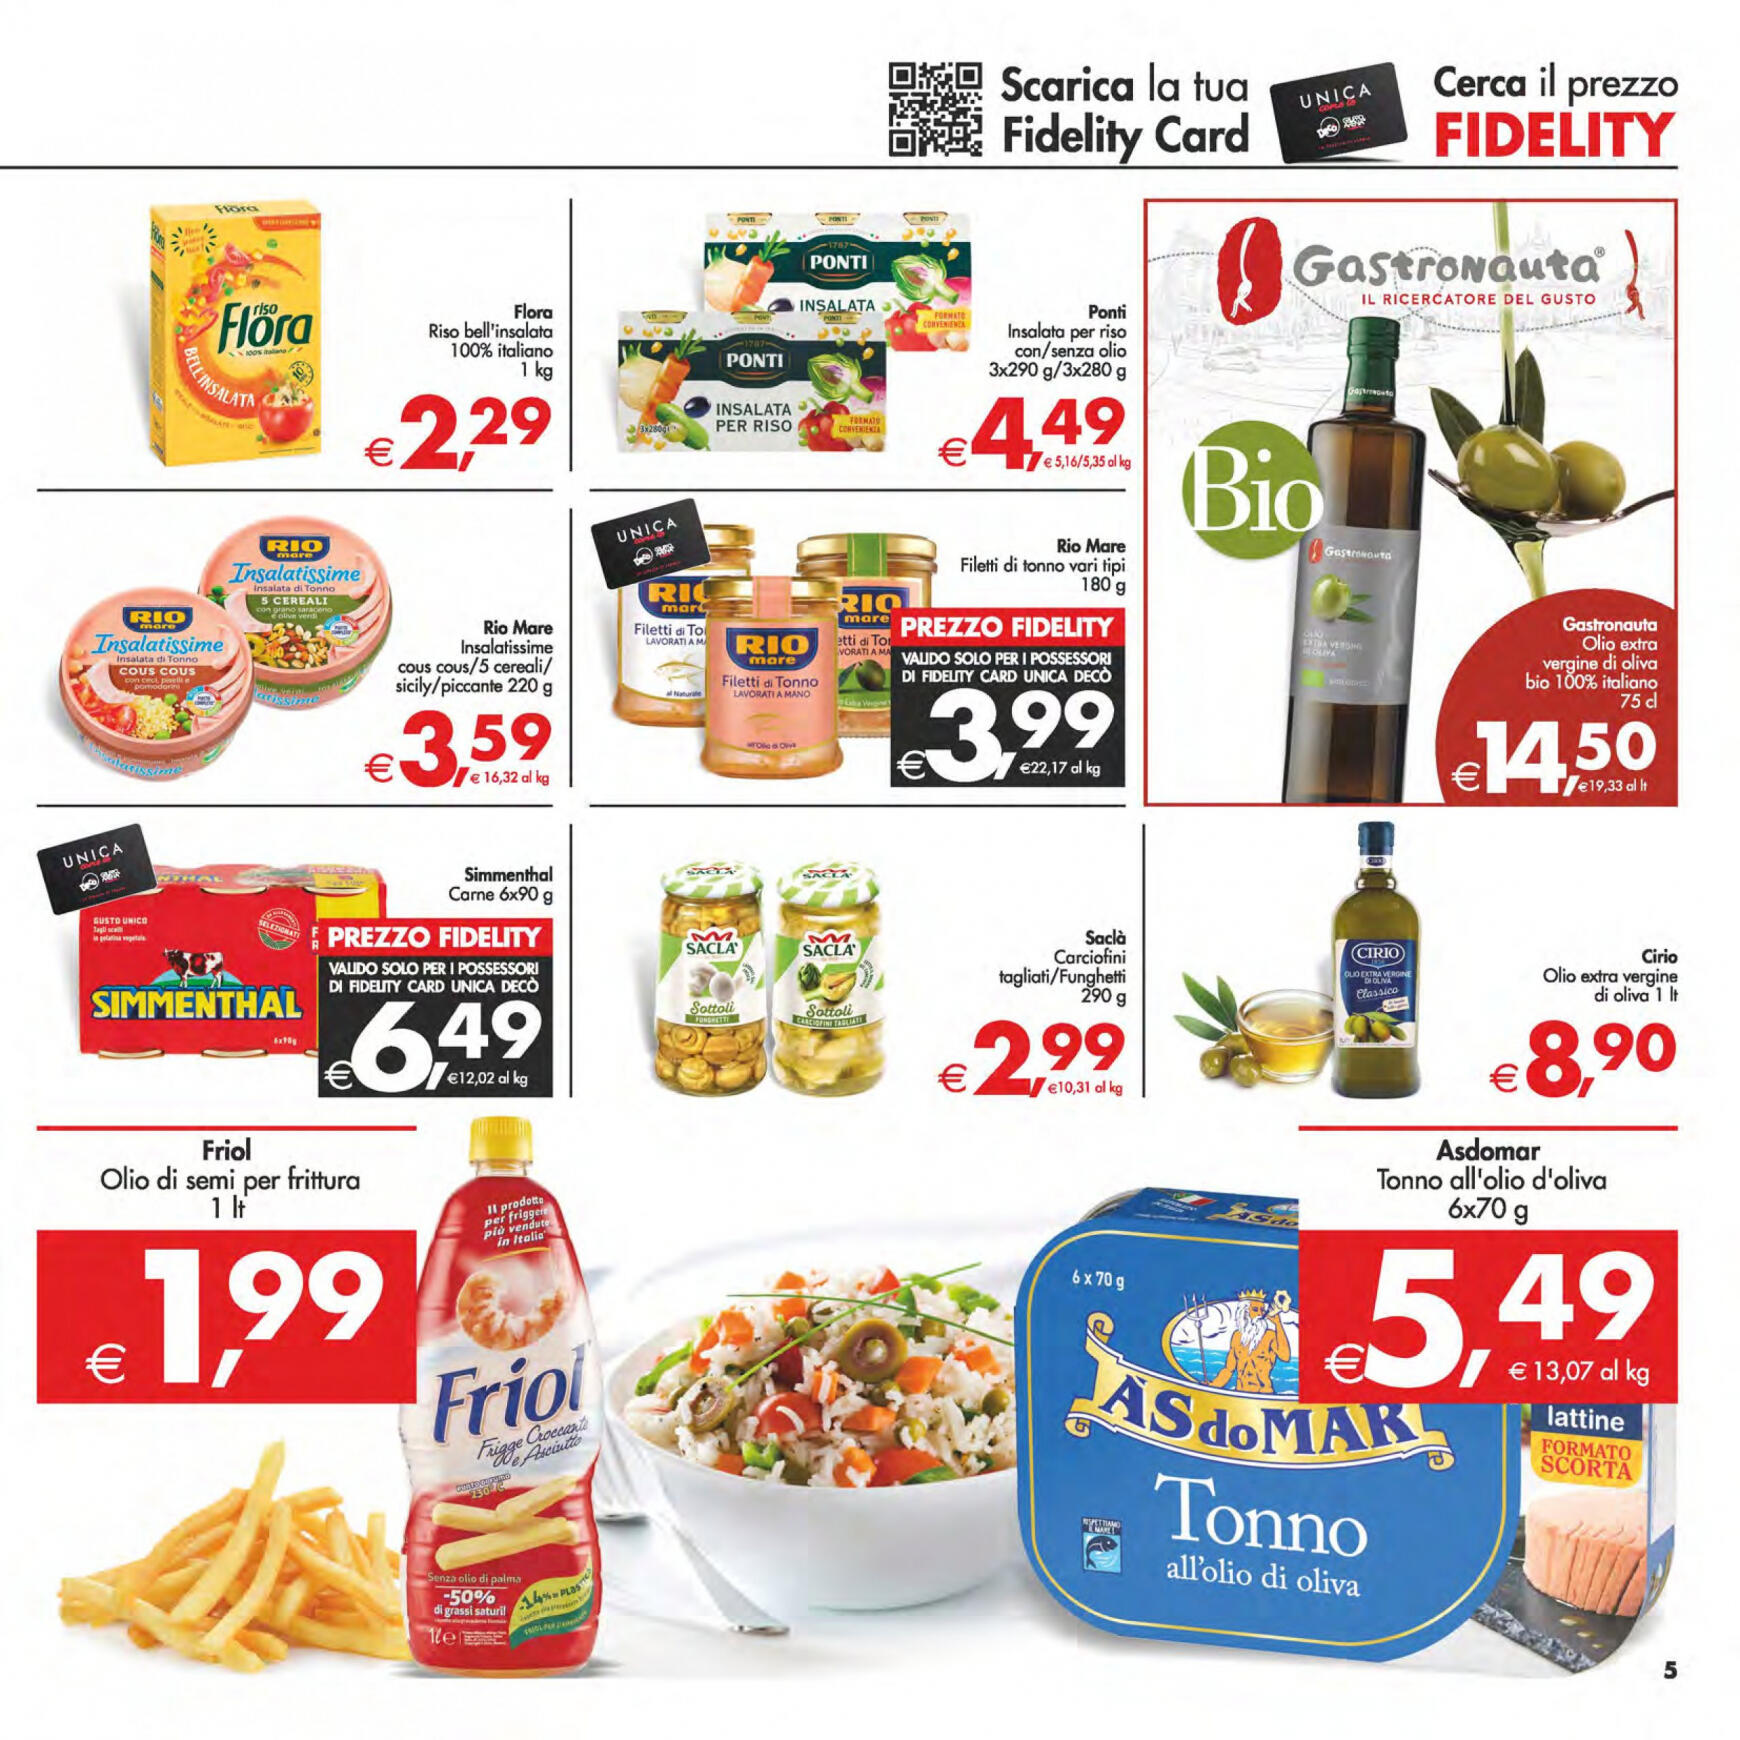 deco - Nuovo volantino Decò - Maxistore/Supermercati/Local 14.05. - 23.05. - page: 5